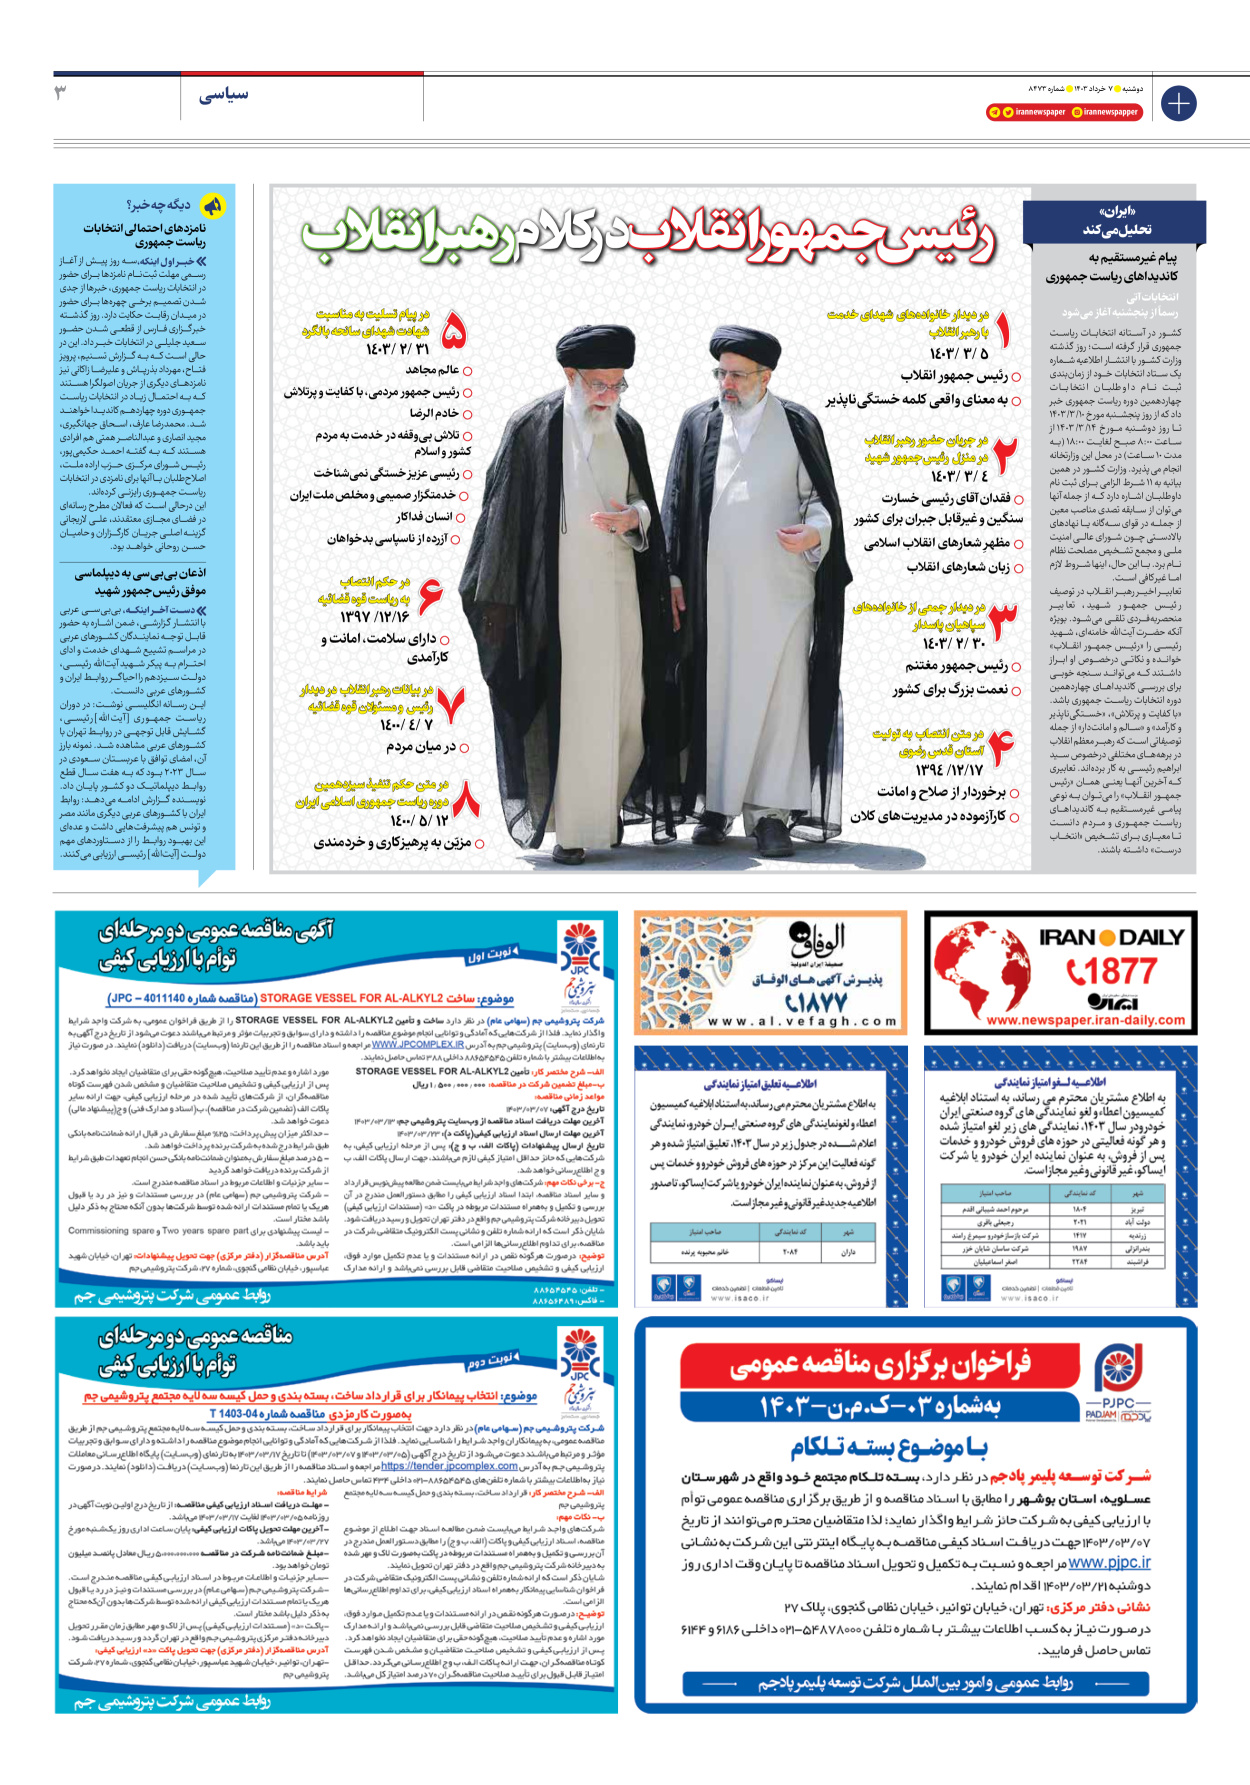 روزنامه ایران - شماره هشت هزار و چهارصد و هفتاد و سه - ۰۷ خرداد ۱۴۰۳ - صفحه ۳